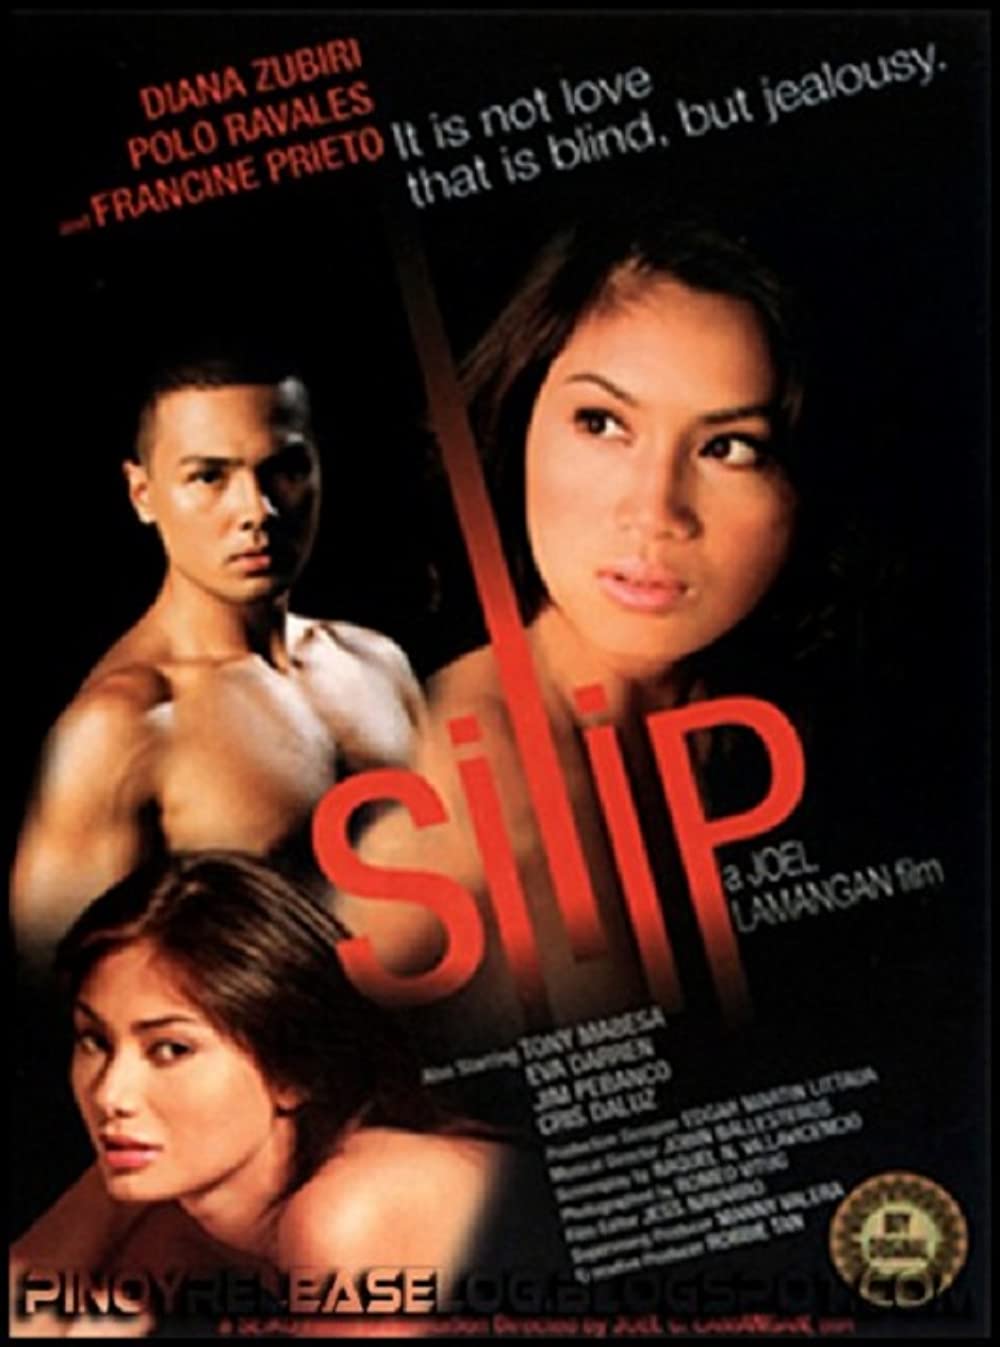 Silip 2007 movie poster